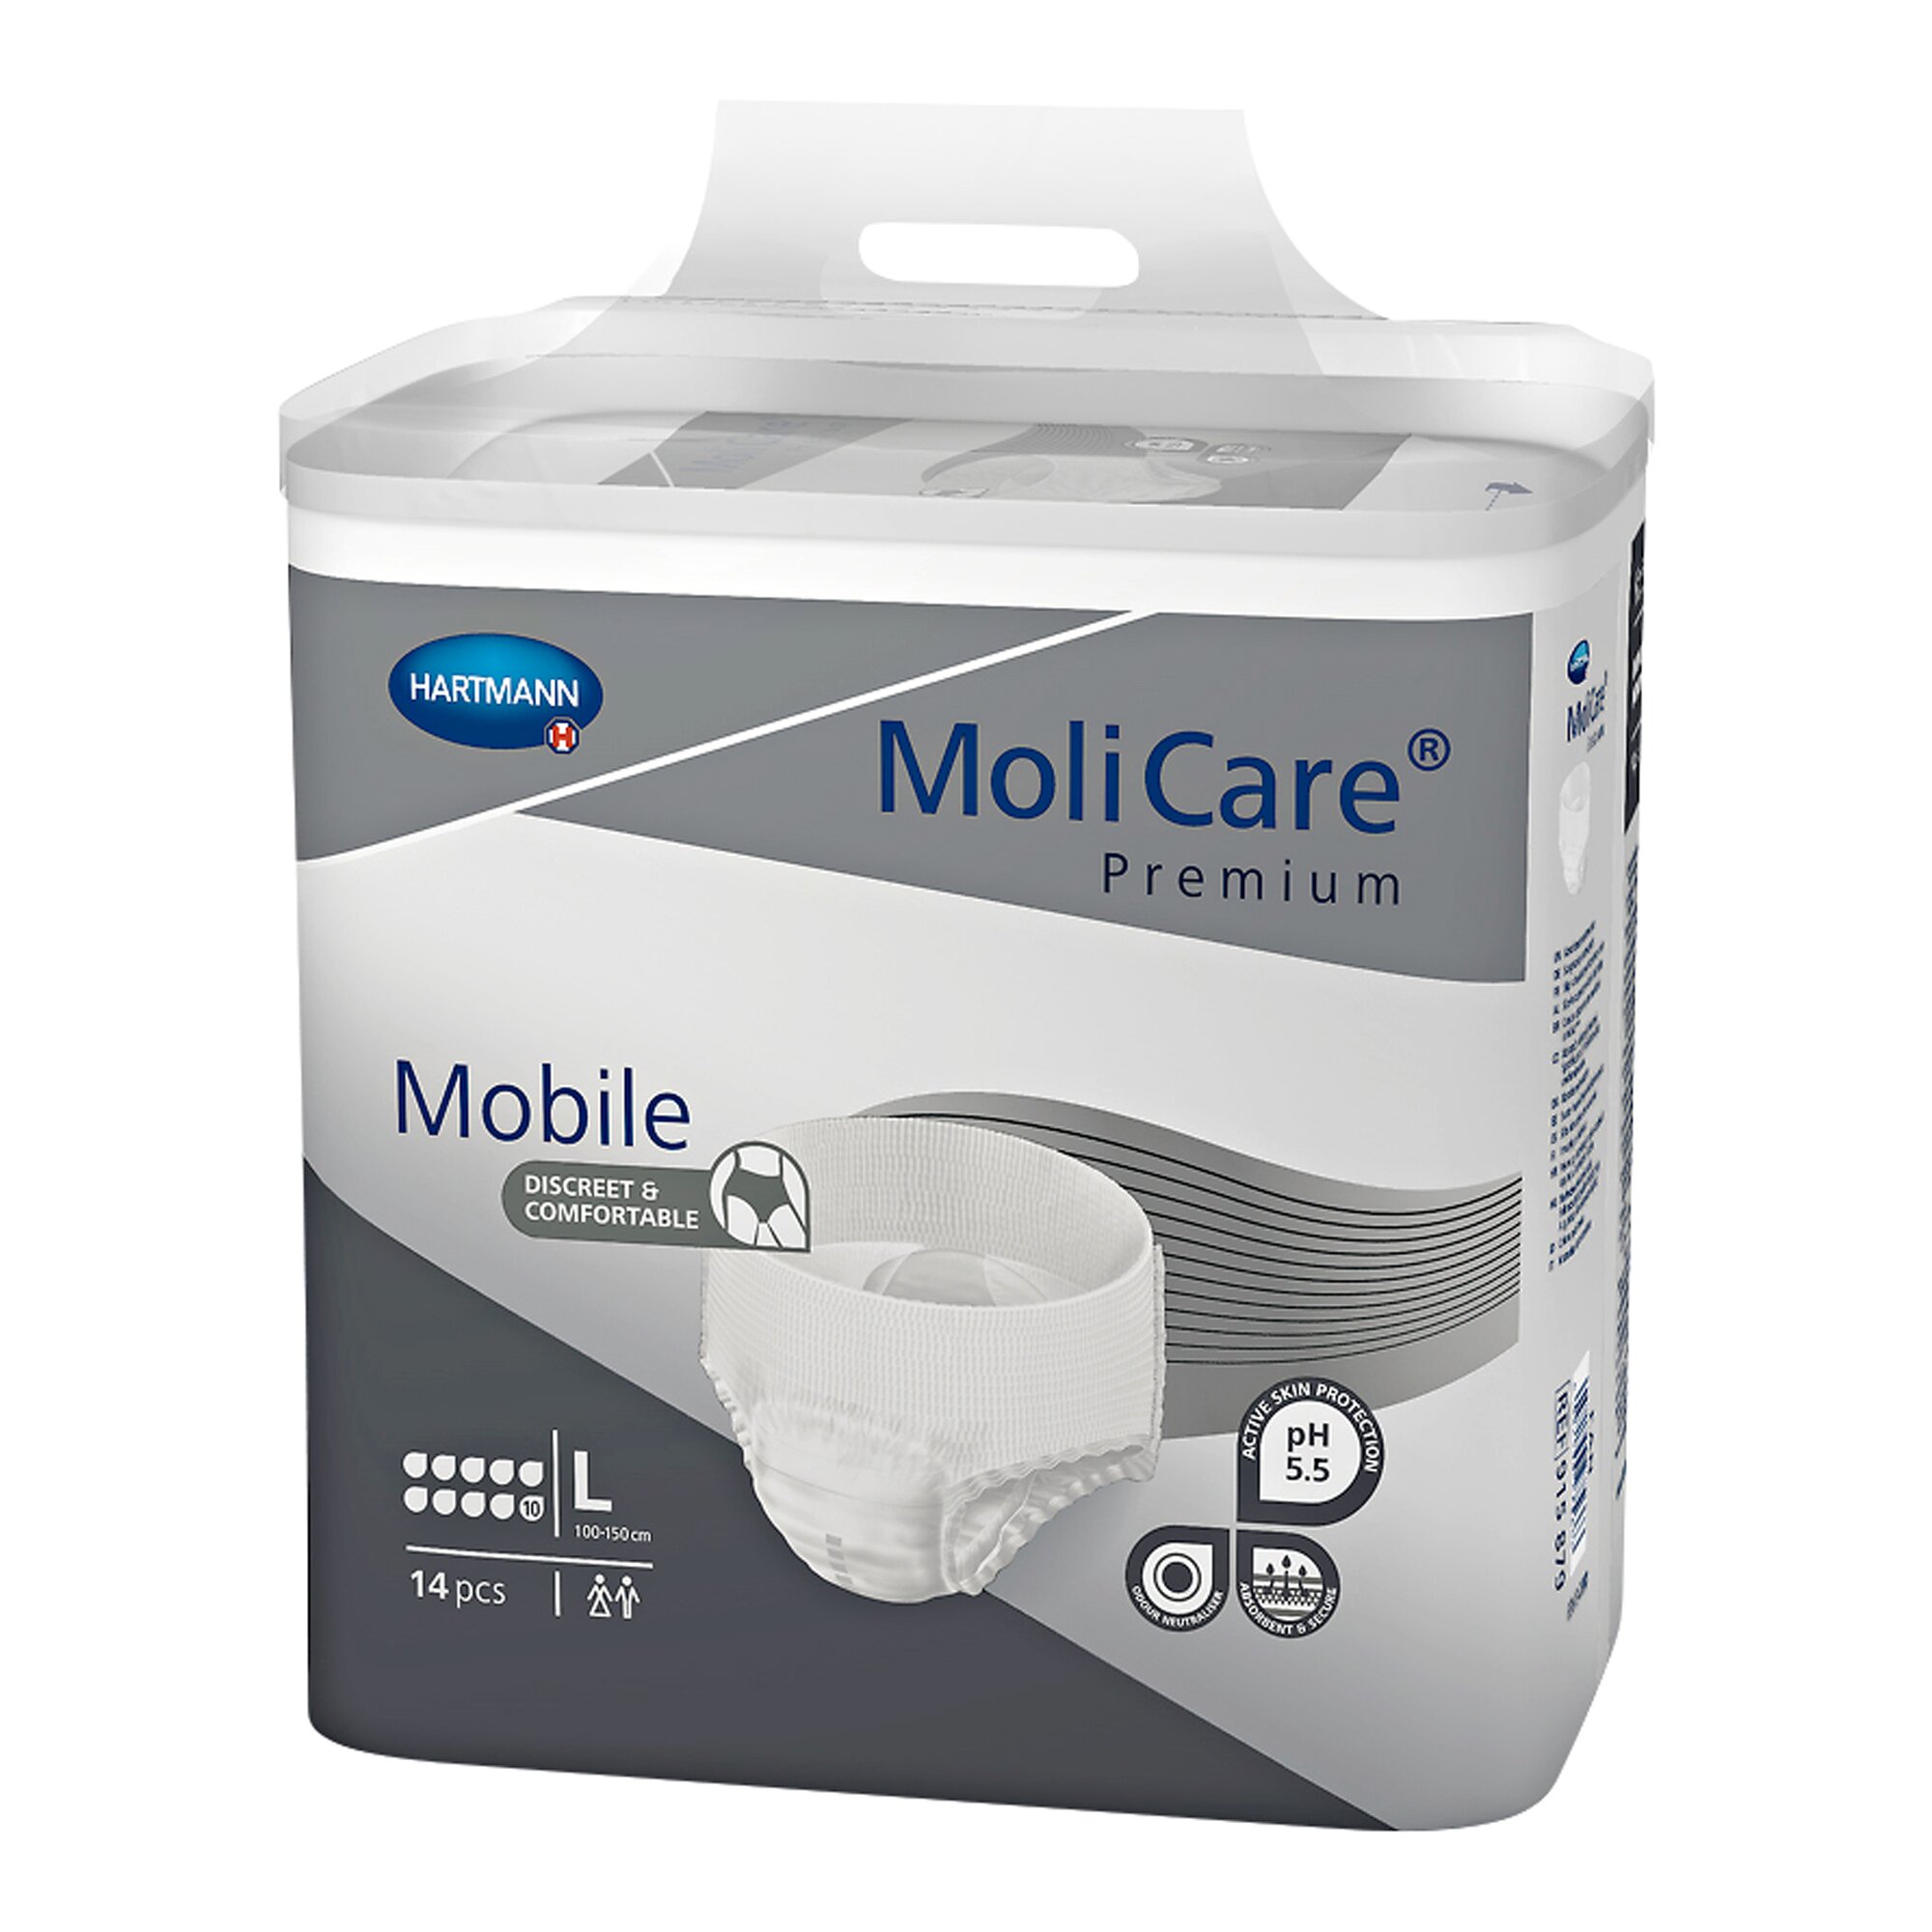 MoliCare Premium Mobile, Saugleistung 2600 ml, 14 Stück, Größe: L